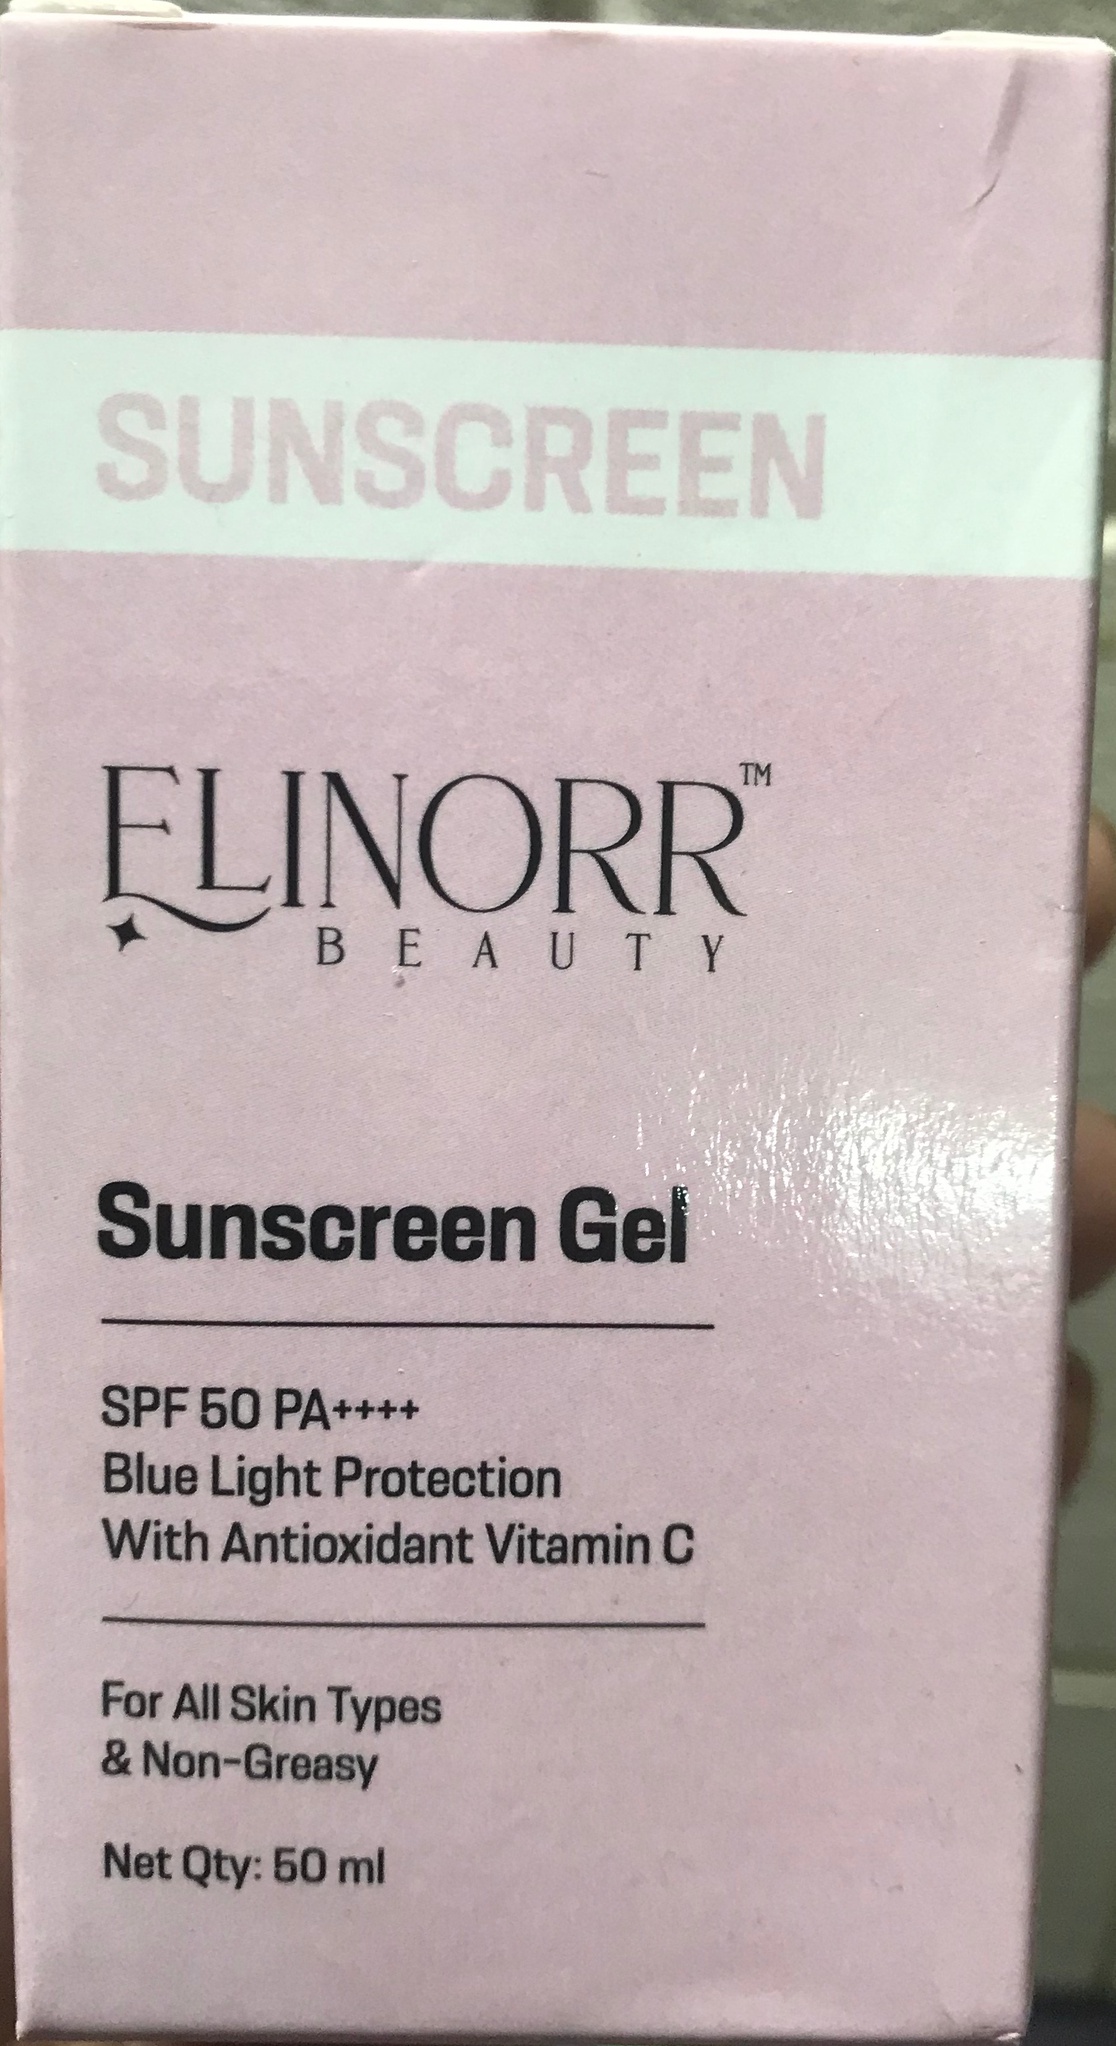 Elinorr Beauty Sunscreen Gel SPF 50